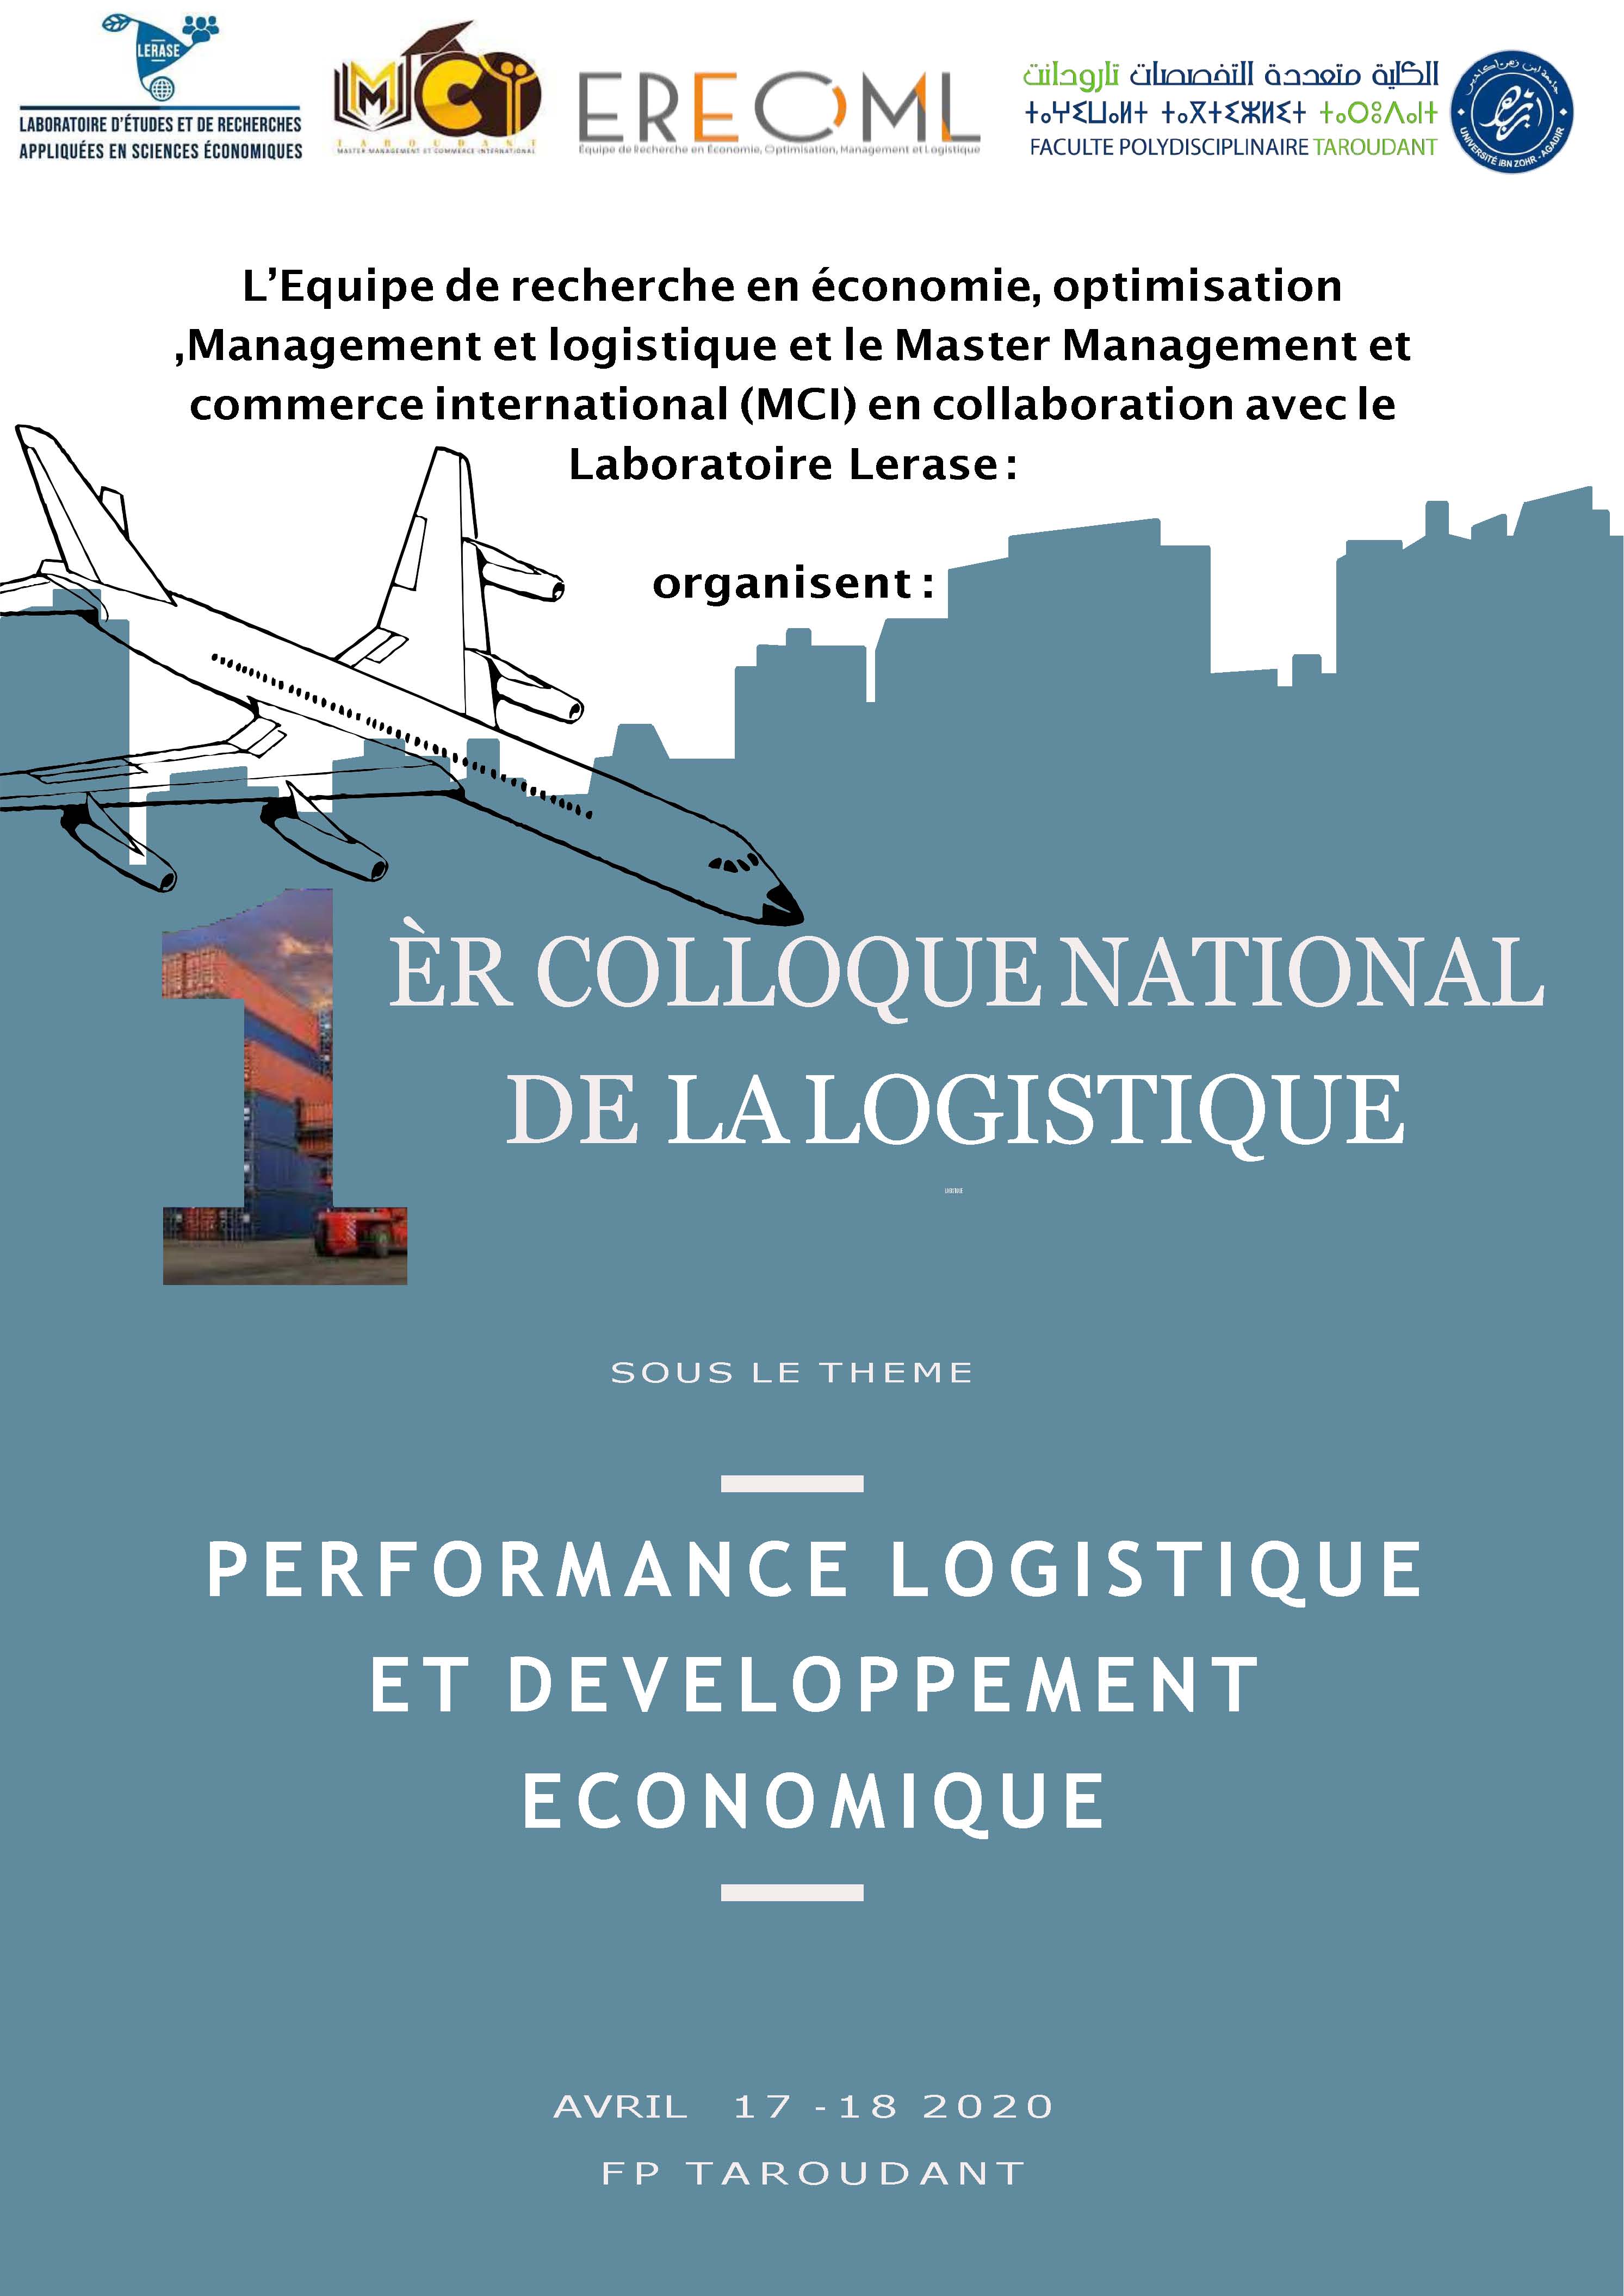 1 er colloque national sous le thème Performance logistique et développement économique